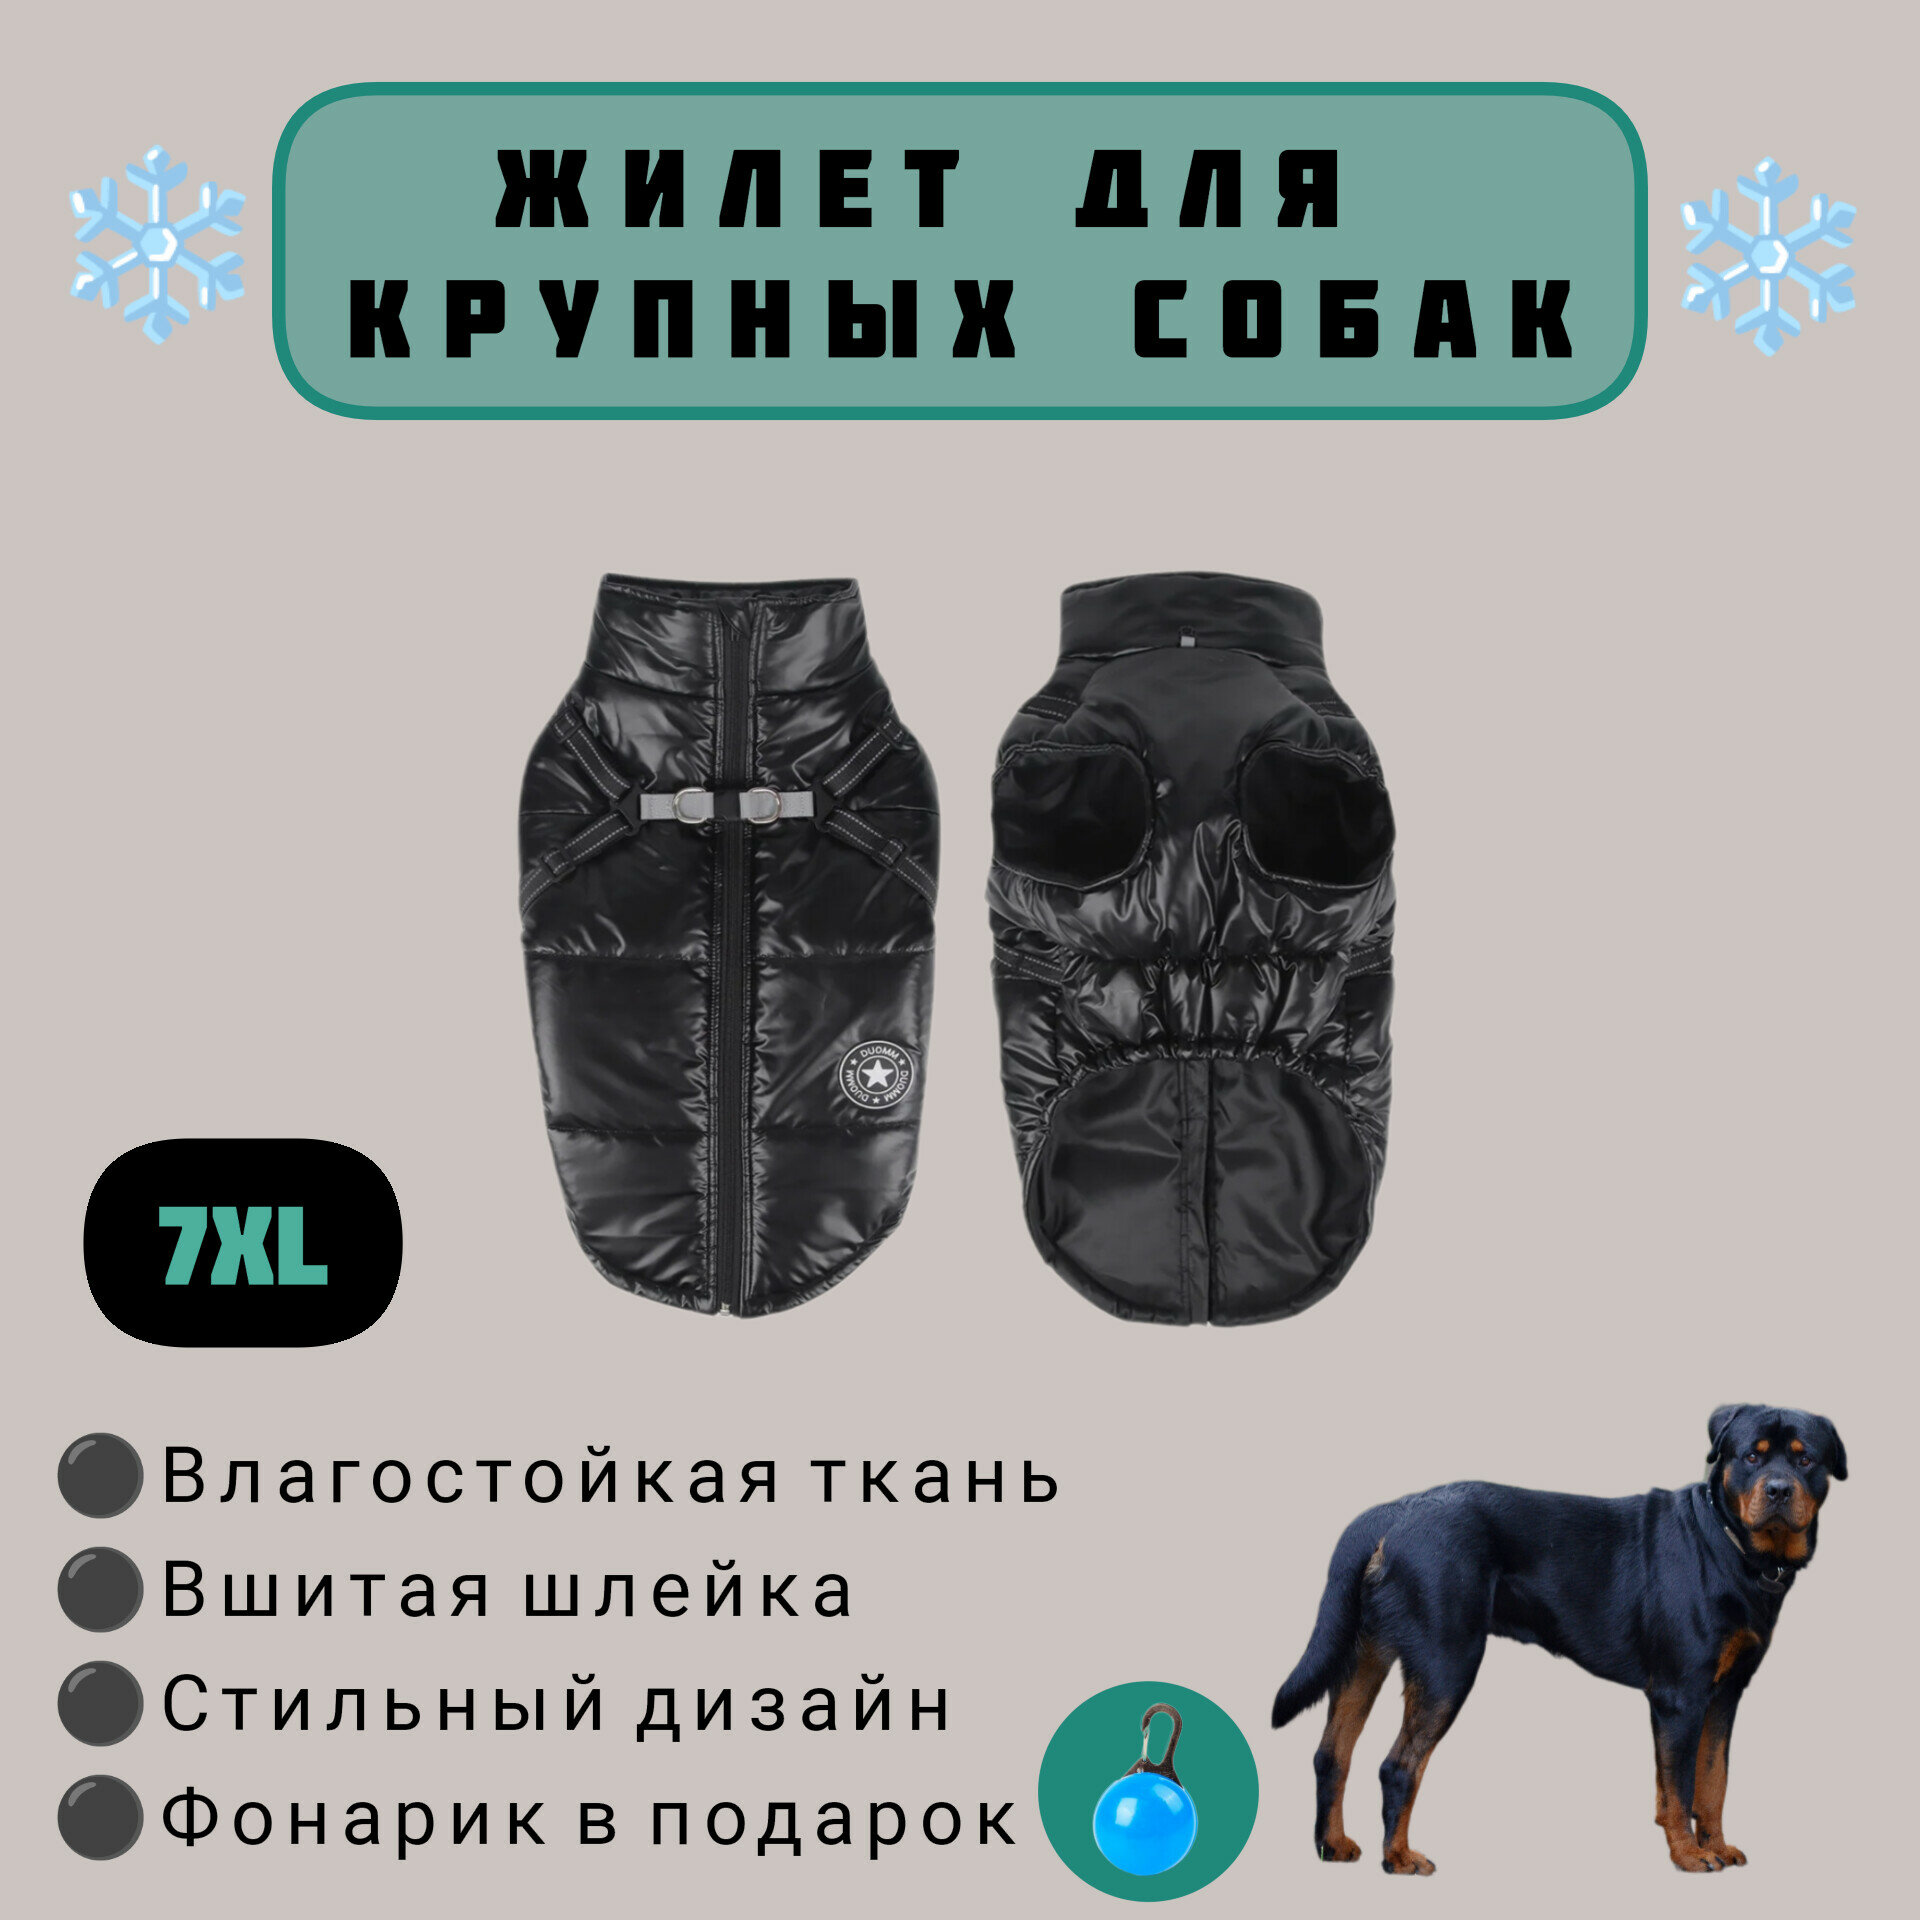 Одежда для собак крупных пород, жилет зимний, черный, 7XL